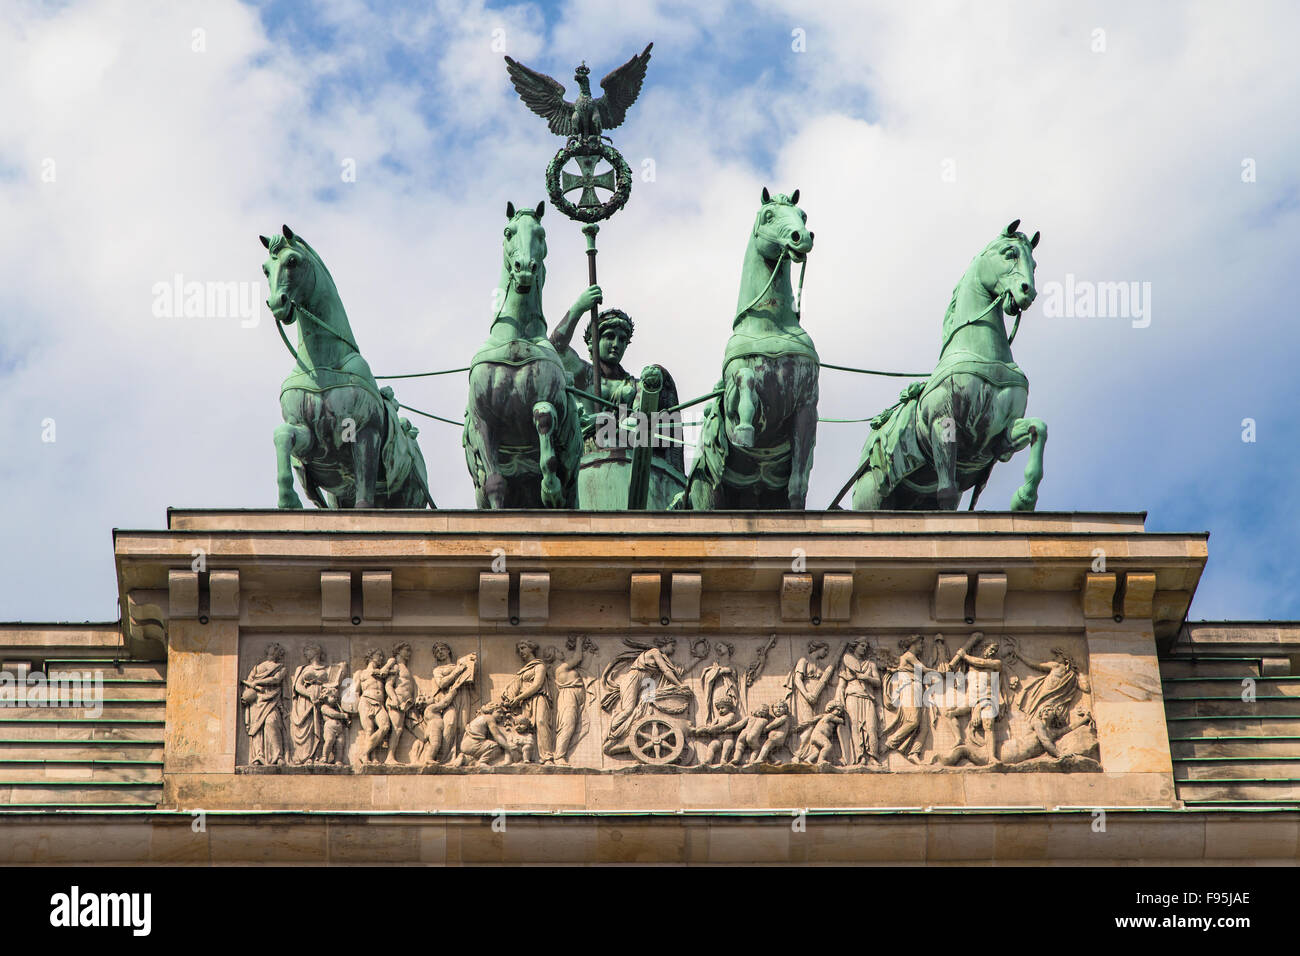 Quadriga atop the Brandenburg Gate in Berlin, Germany. Stock Photo